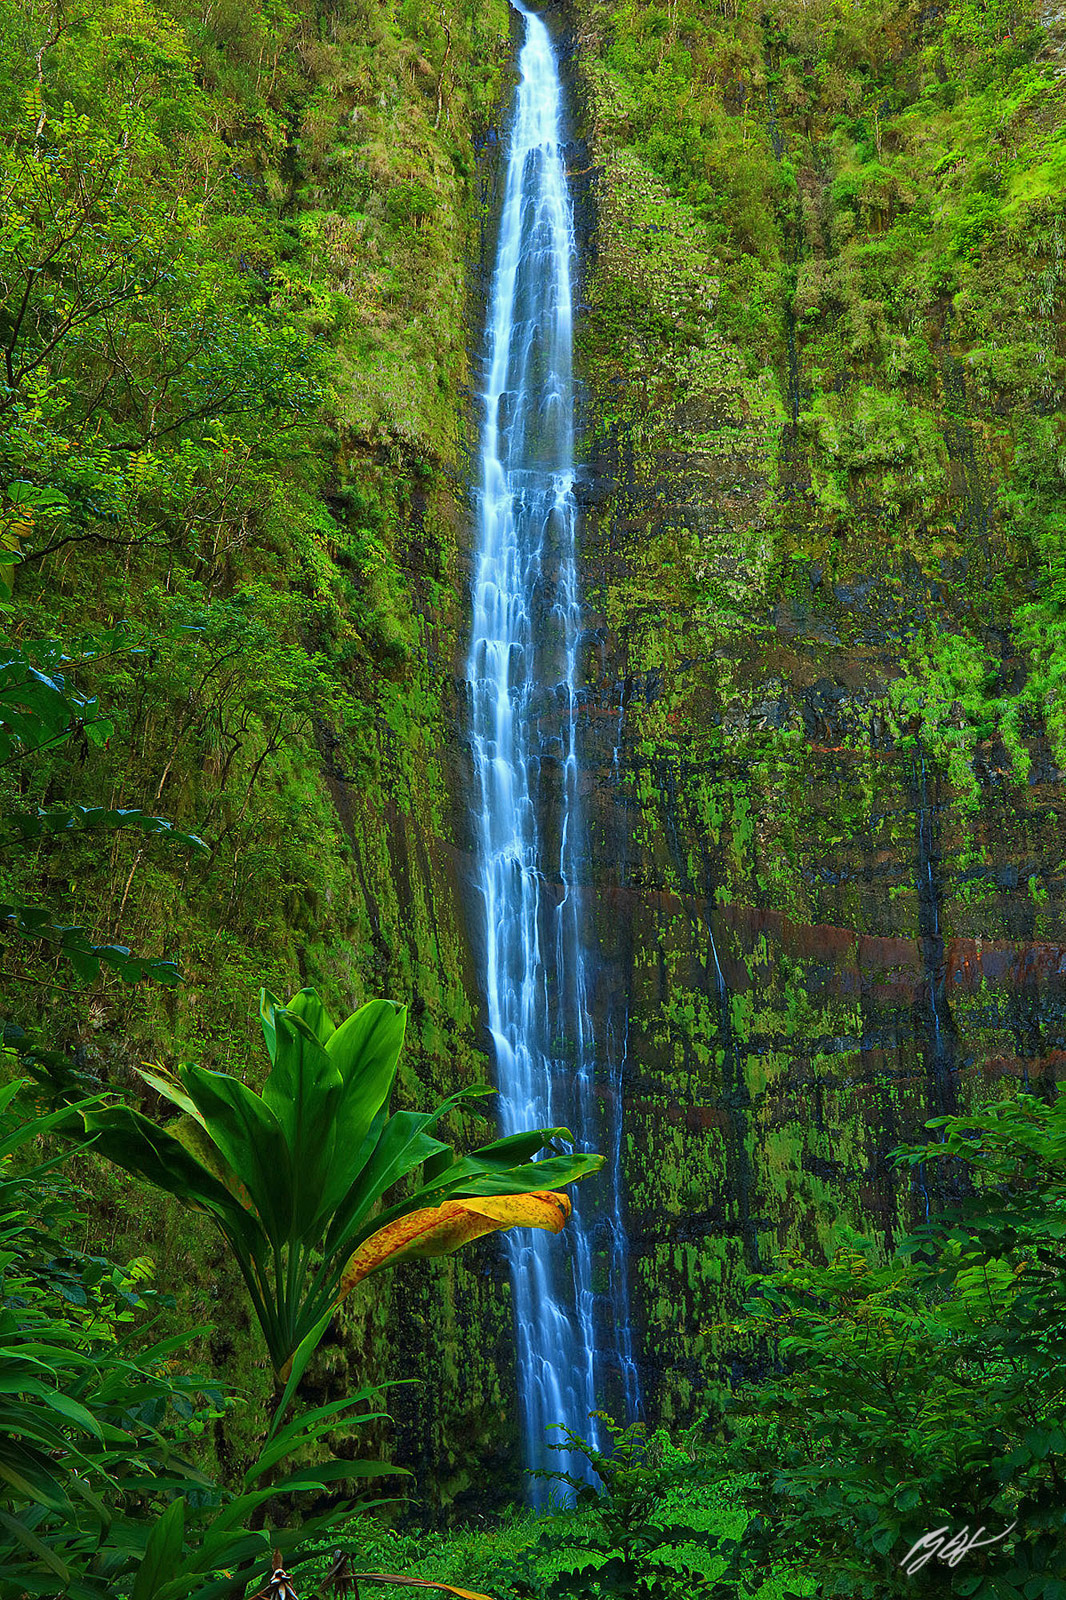 Makahiku Fall and the end of the Pipiwau Trail in Haleakala National Park on the island of Maui, Hawaii